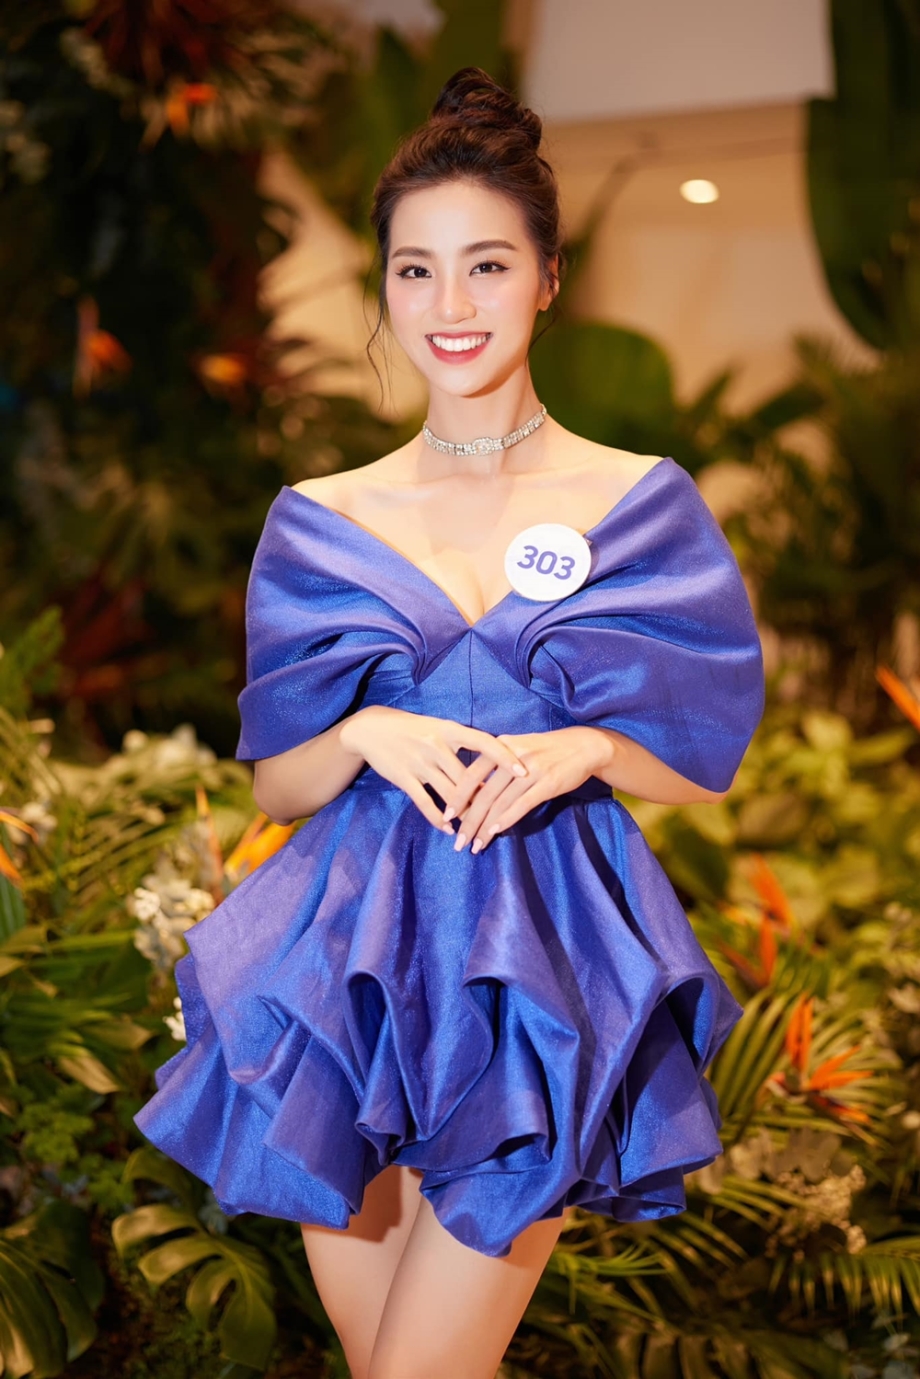  Tú Trinh từng vào top 5 các phần thi phụ khác gồm Người đẹp Du lịch, Người đẹp Tài năng.  